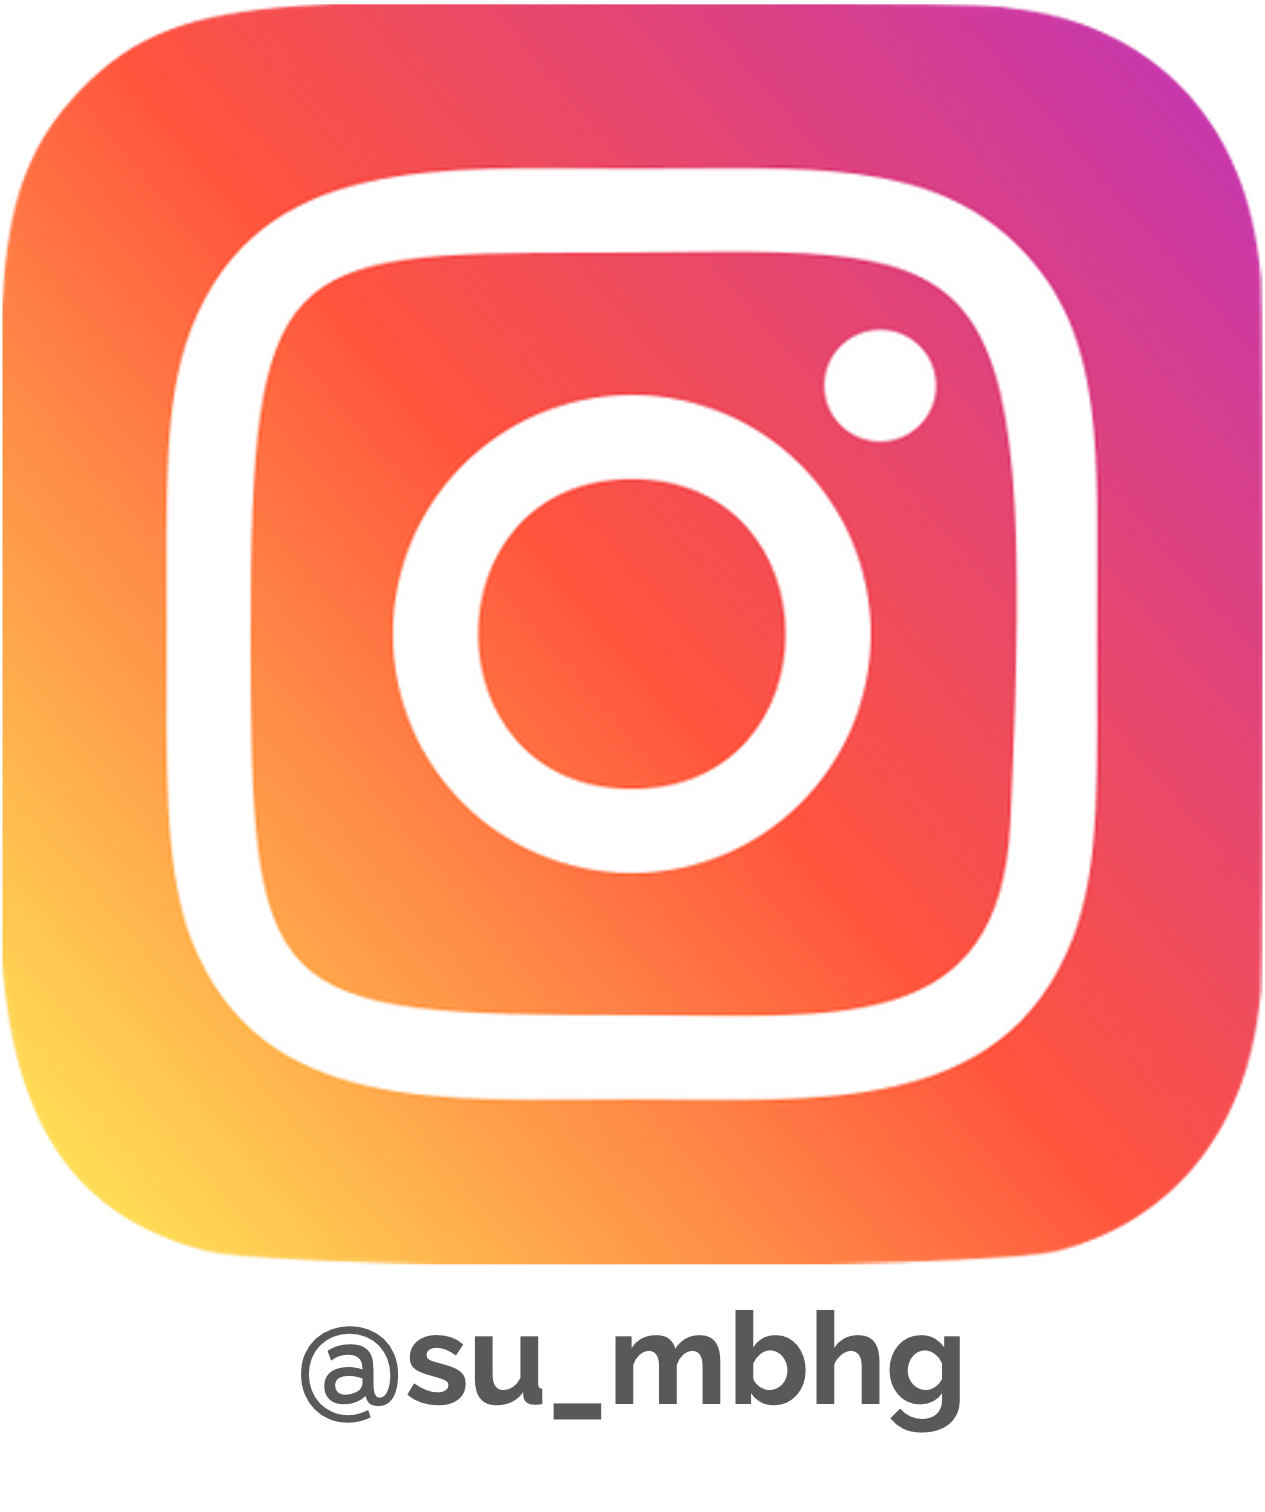 MBHG_Instagram.png